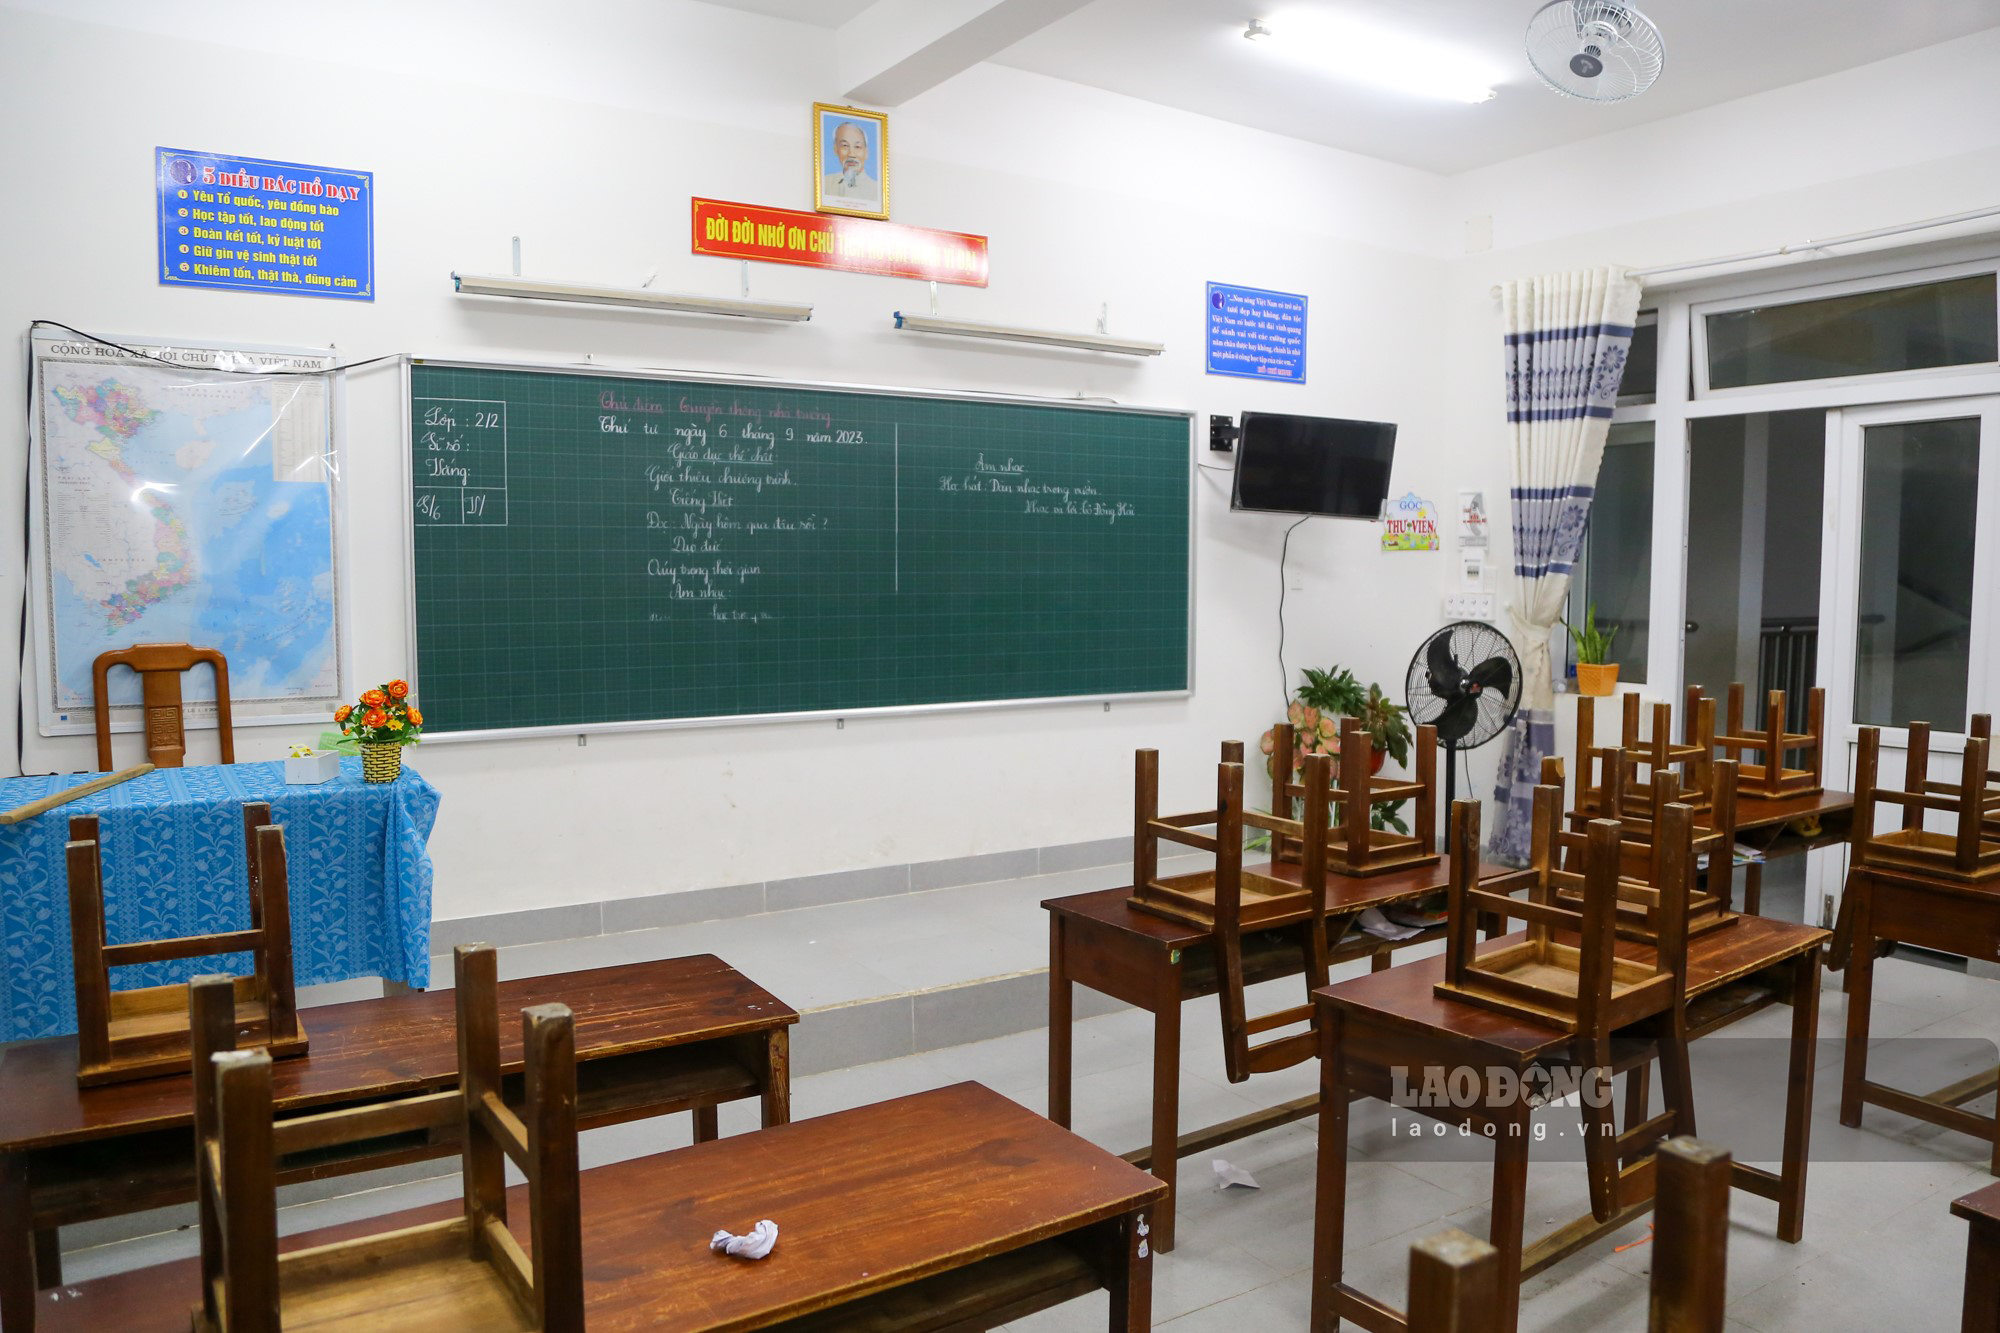 Bên trong các lớp học đều được bố trí quạt, màn hình tivi để phục vụ cho việc giảng dạy.